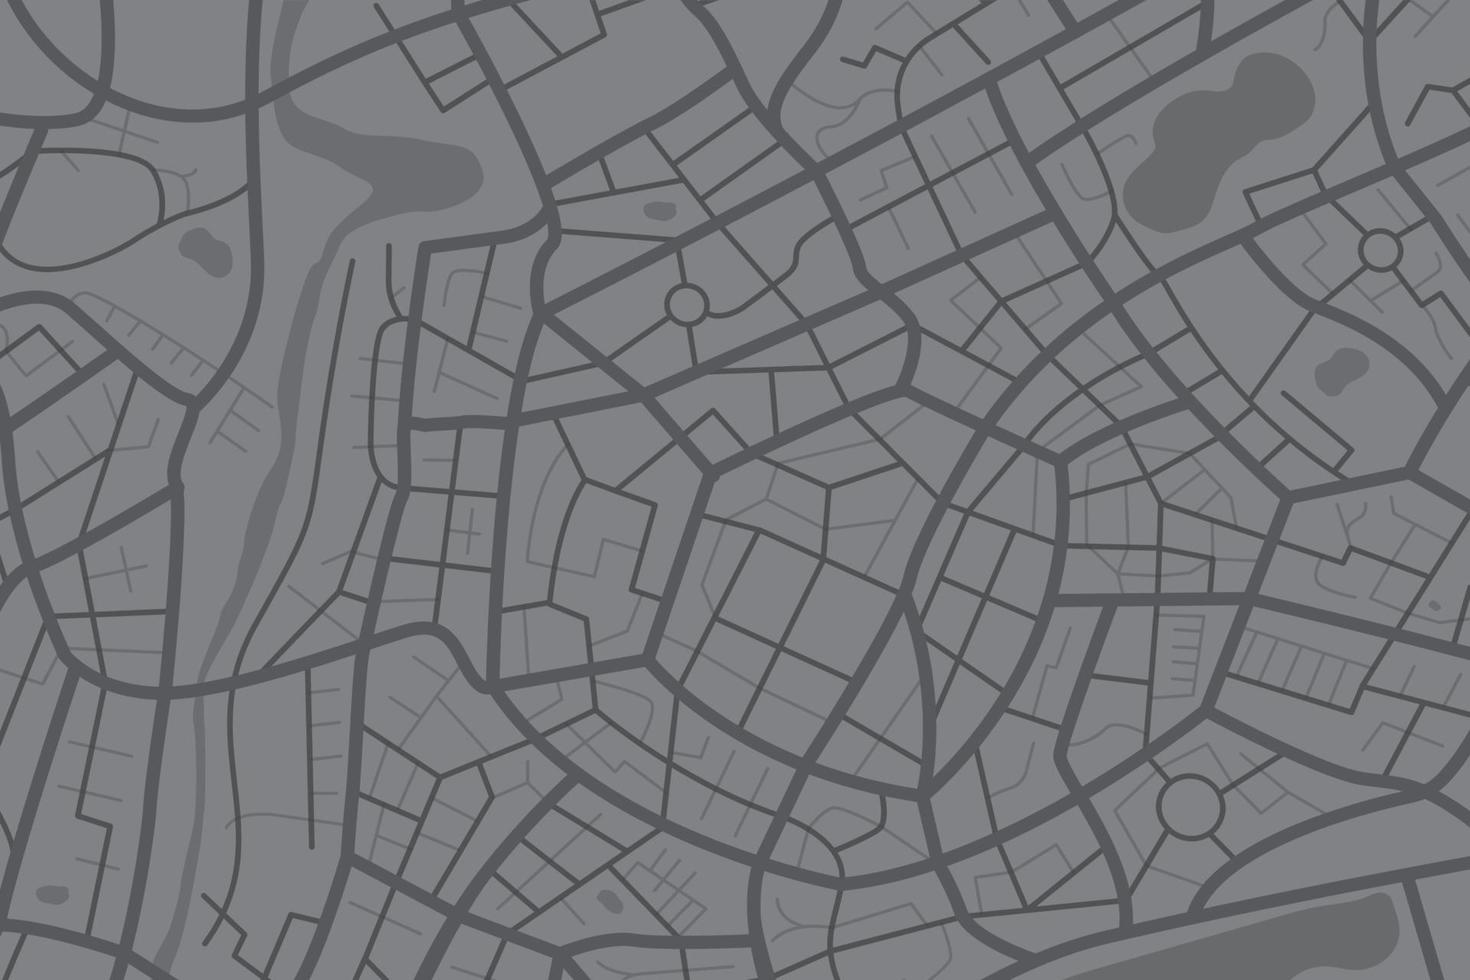 vue de dessus propre aérienne du plan de la ville avec rue et rivière 010 vecteur